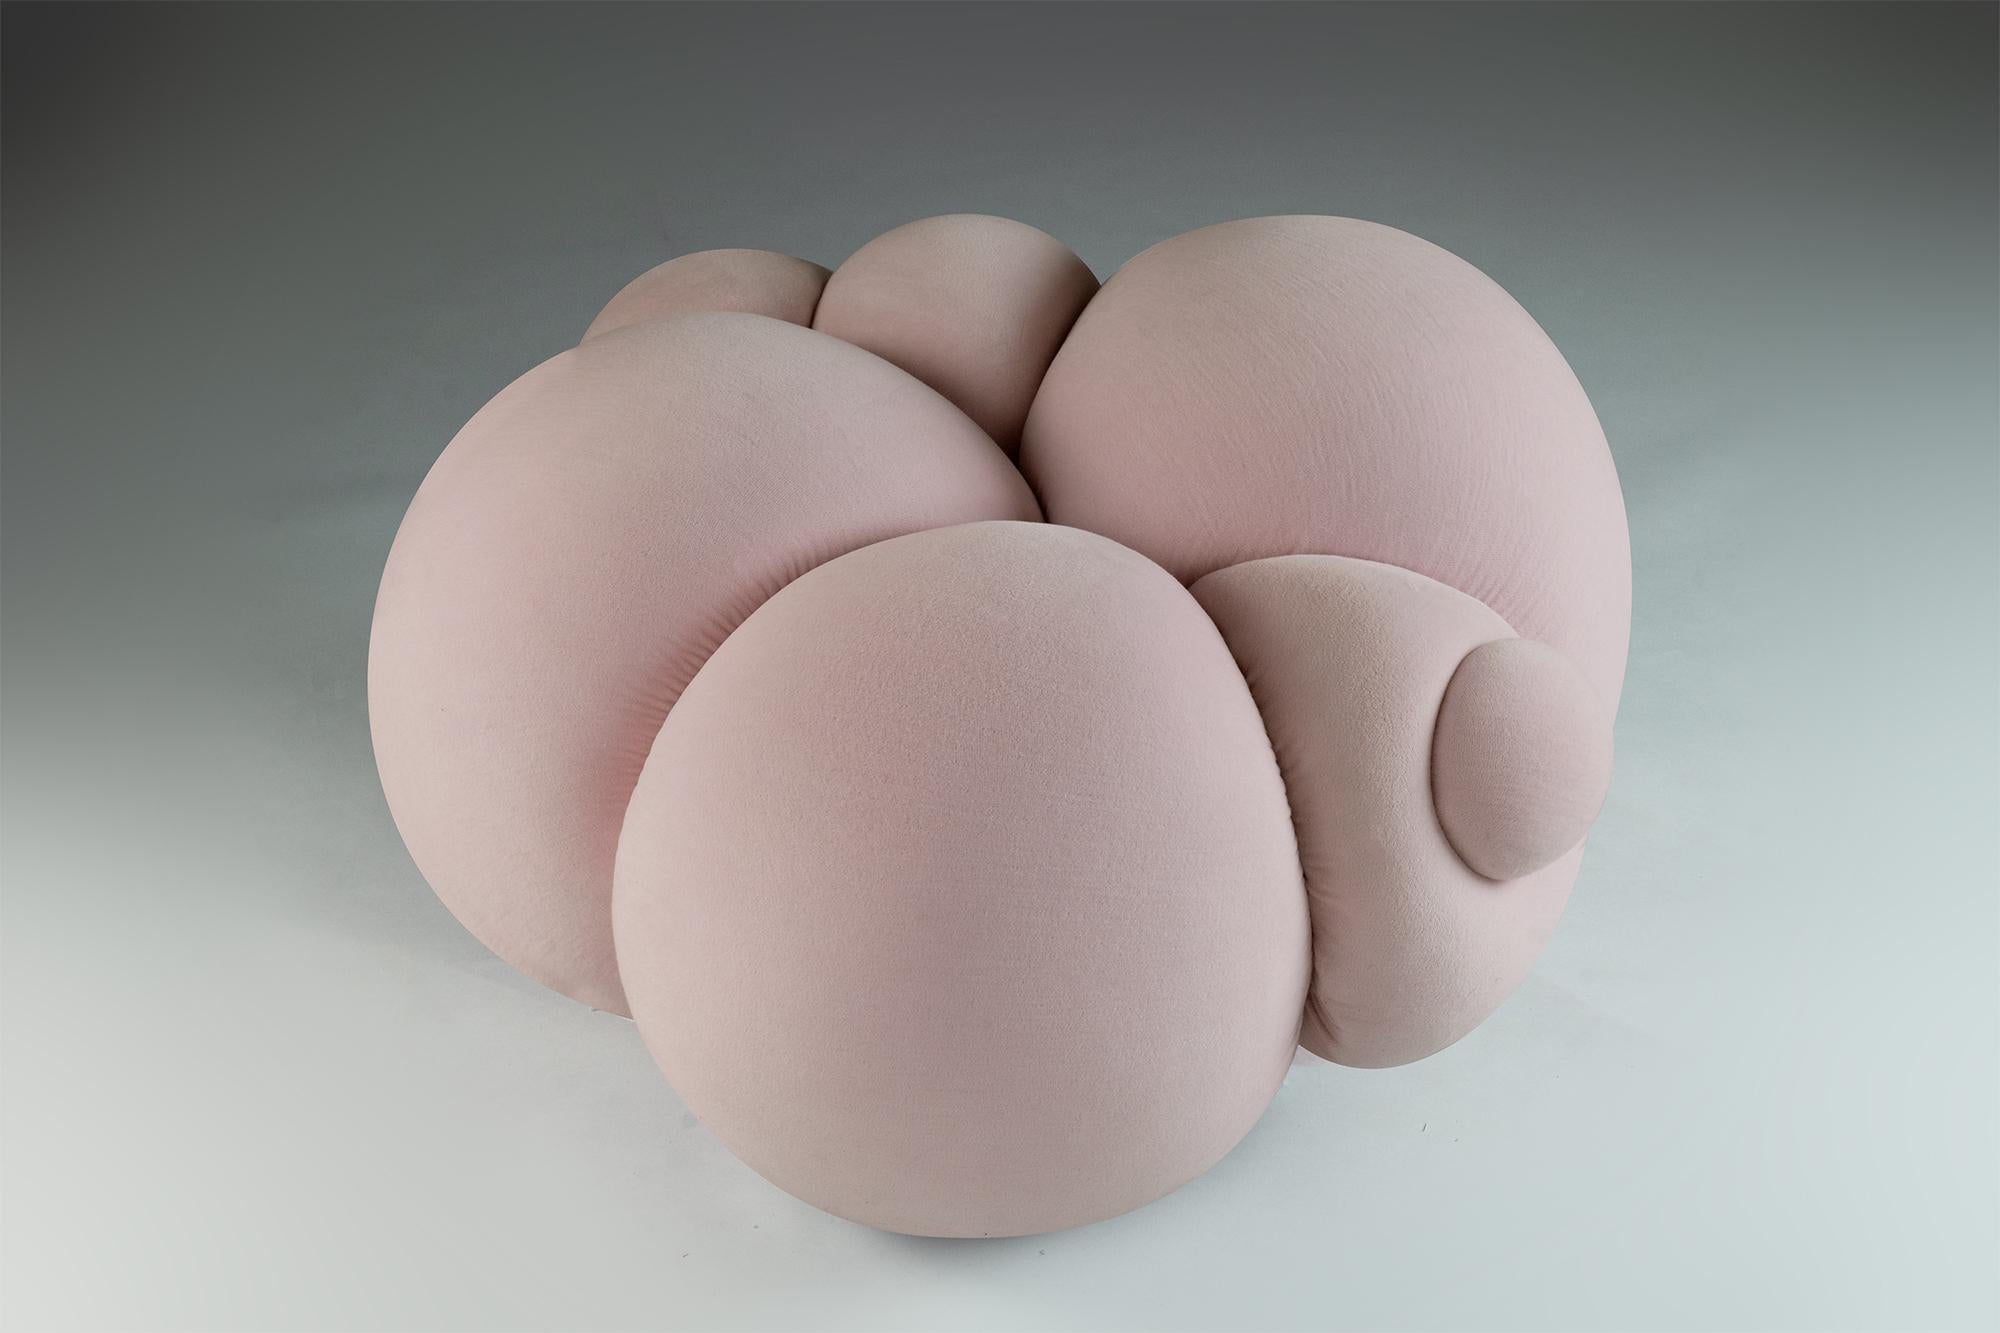 Der Peachy Pouffe aus der Peaches Collection ist ein vielseitiges Möbelstück, das als Hocker oder Fußstütze verwendet werden kann. Seine geschwungenen und organischen Formen passen perfekt zu den Sesseln Big Girl und Derriere. Die aus einer